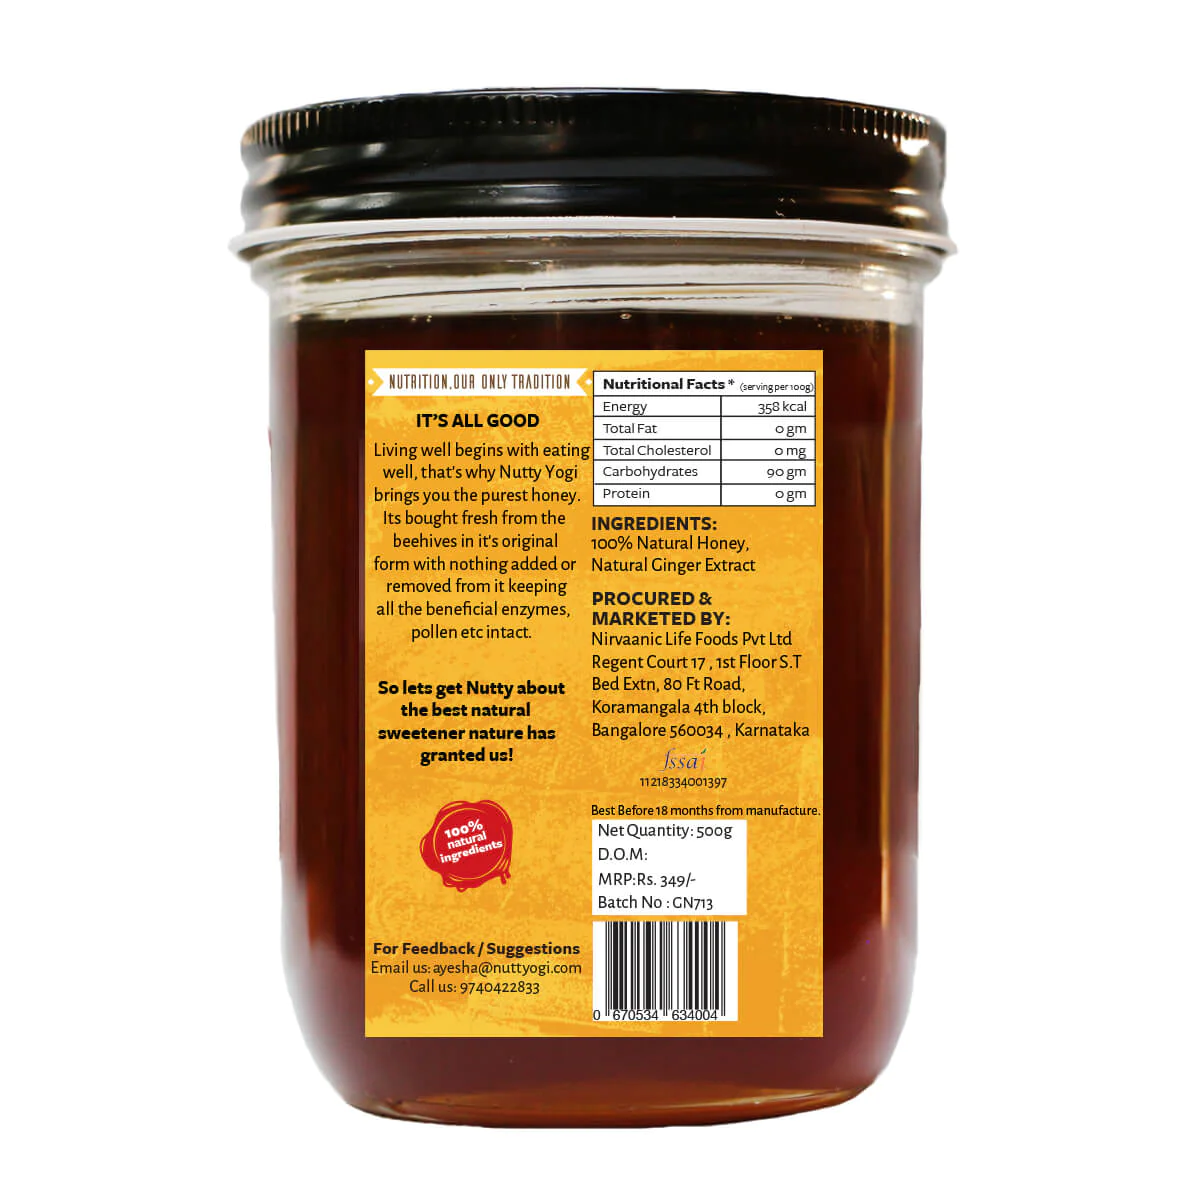 Product: Nutty Yogi Ginger Honey